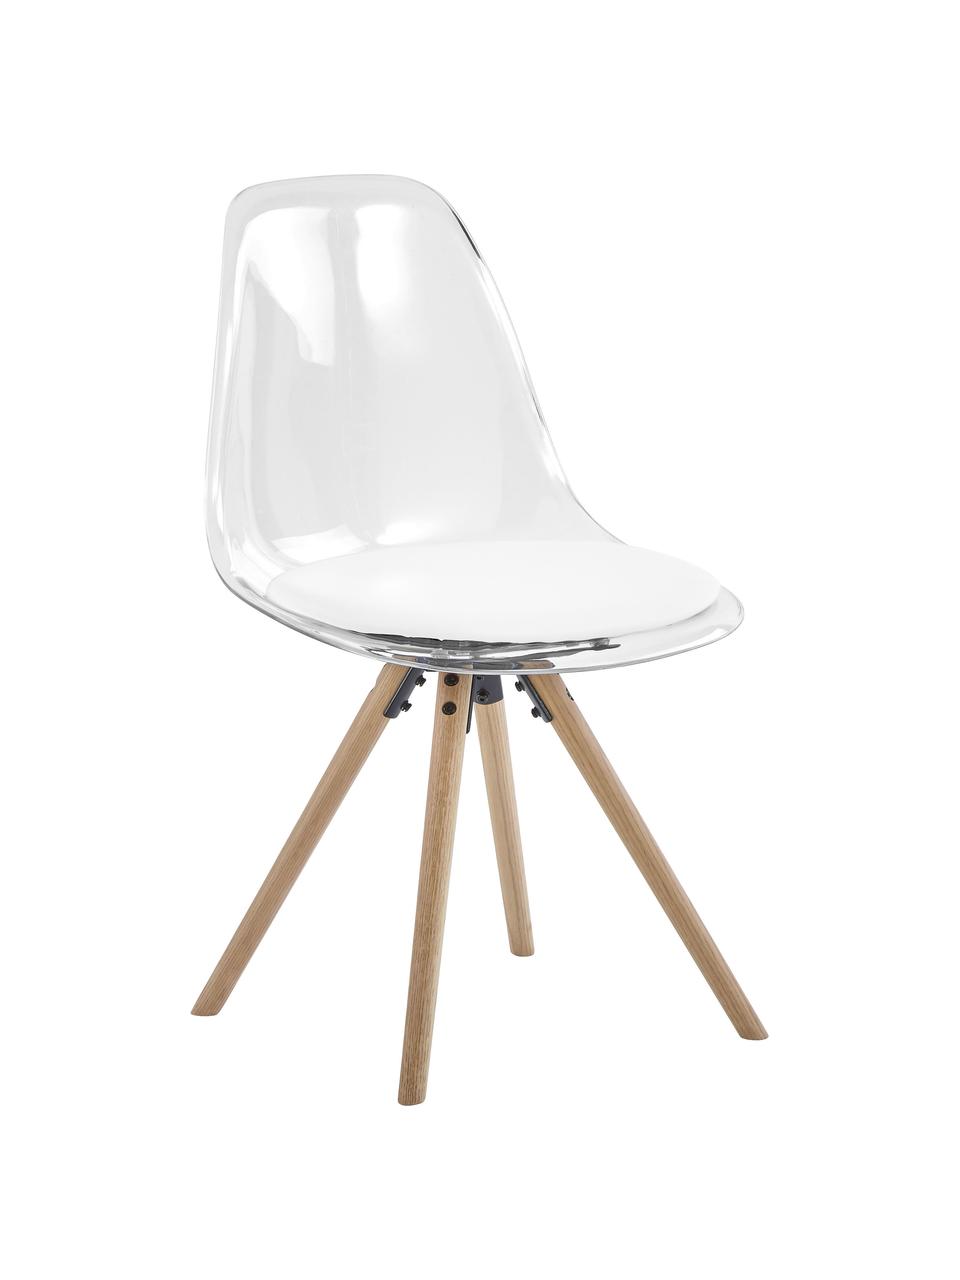 Kunststoff-Stühle Henning, 2 Stück, Sitzschale: Kunststoff, Beine: Eichenholz, geölt, Weiß, Transparent, Eichenholz, B 47 x T 53 cm